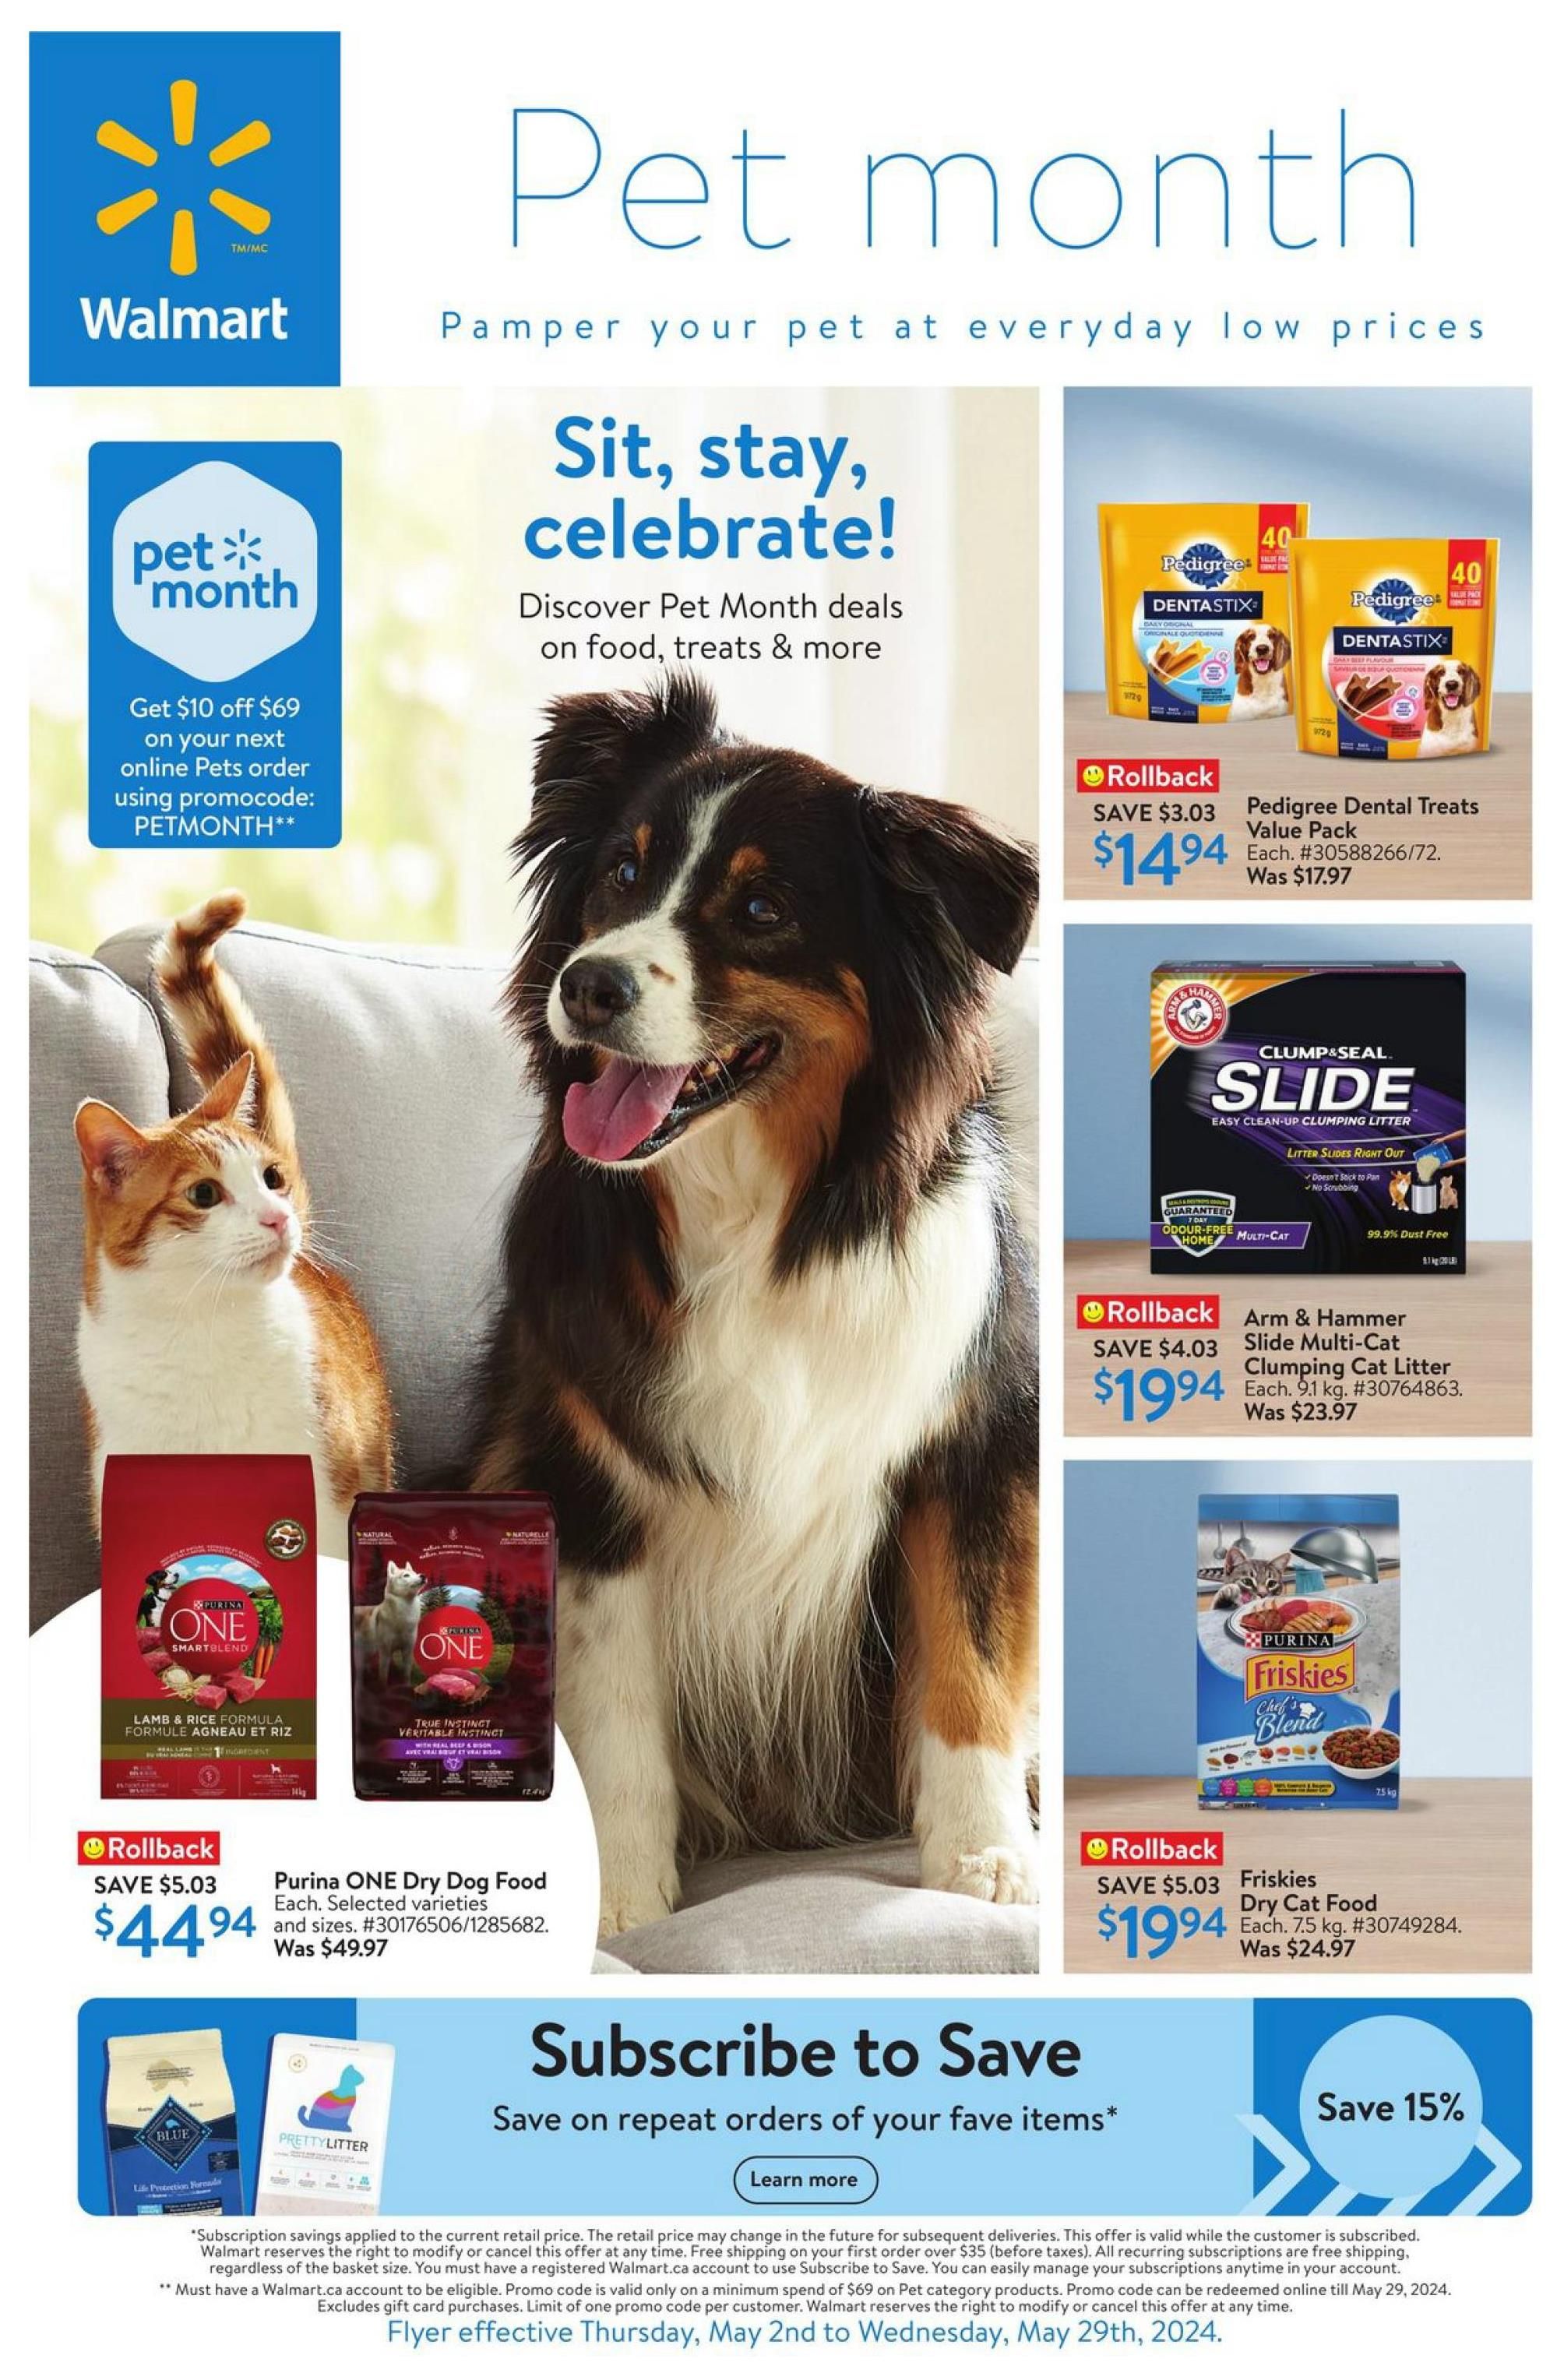 Walmart Canada - Pet Month Specials